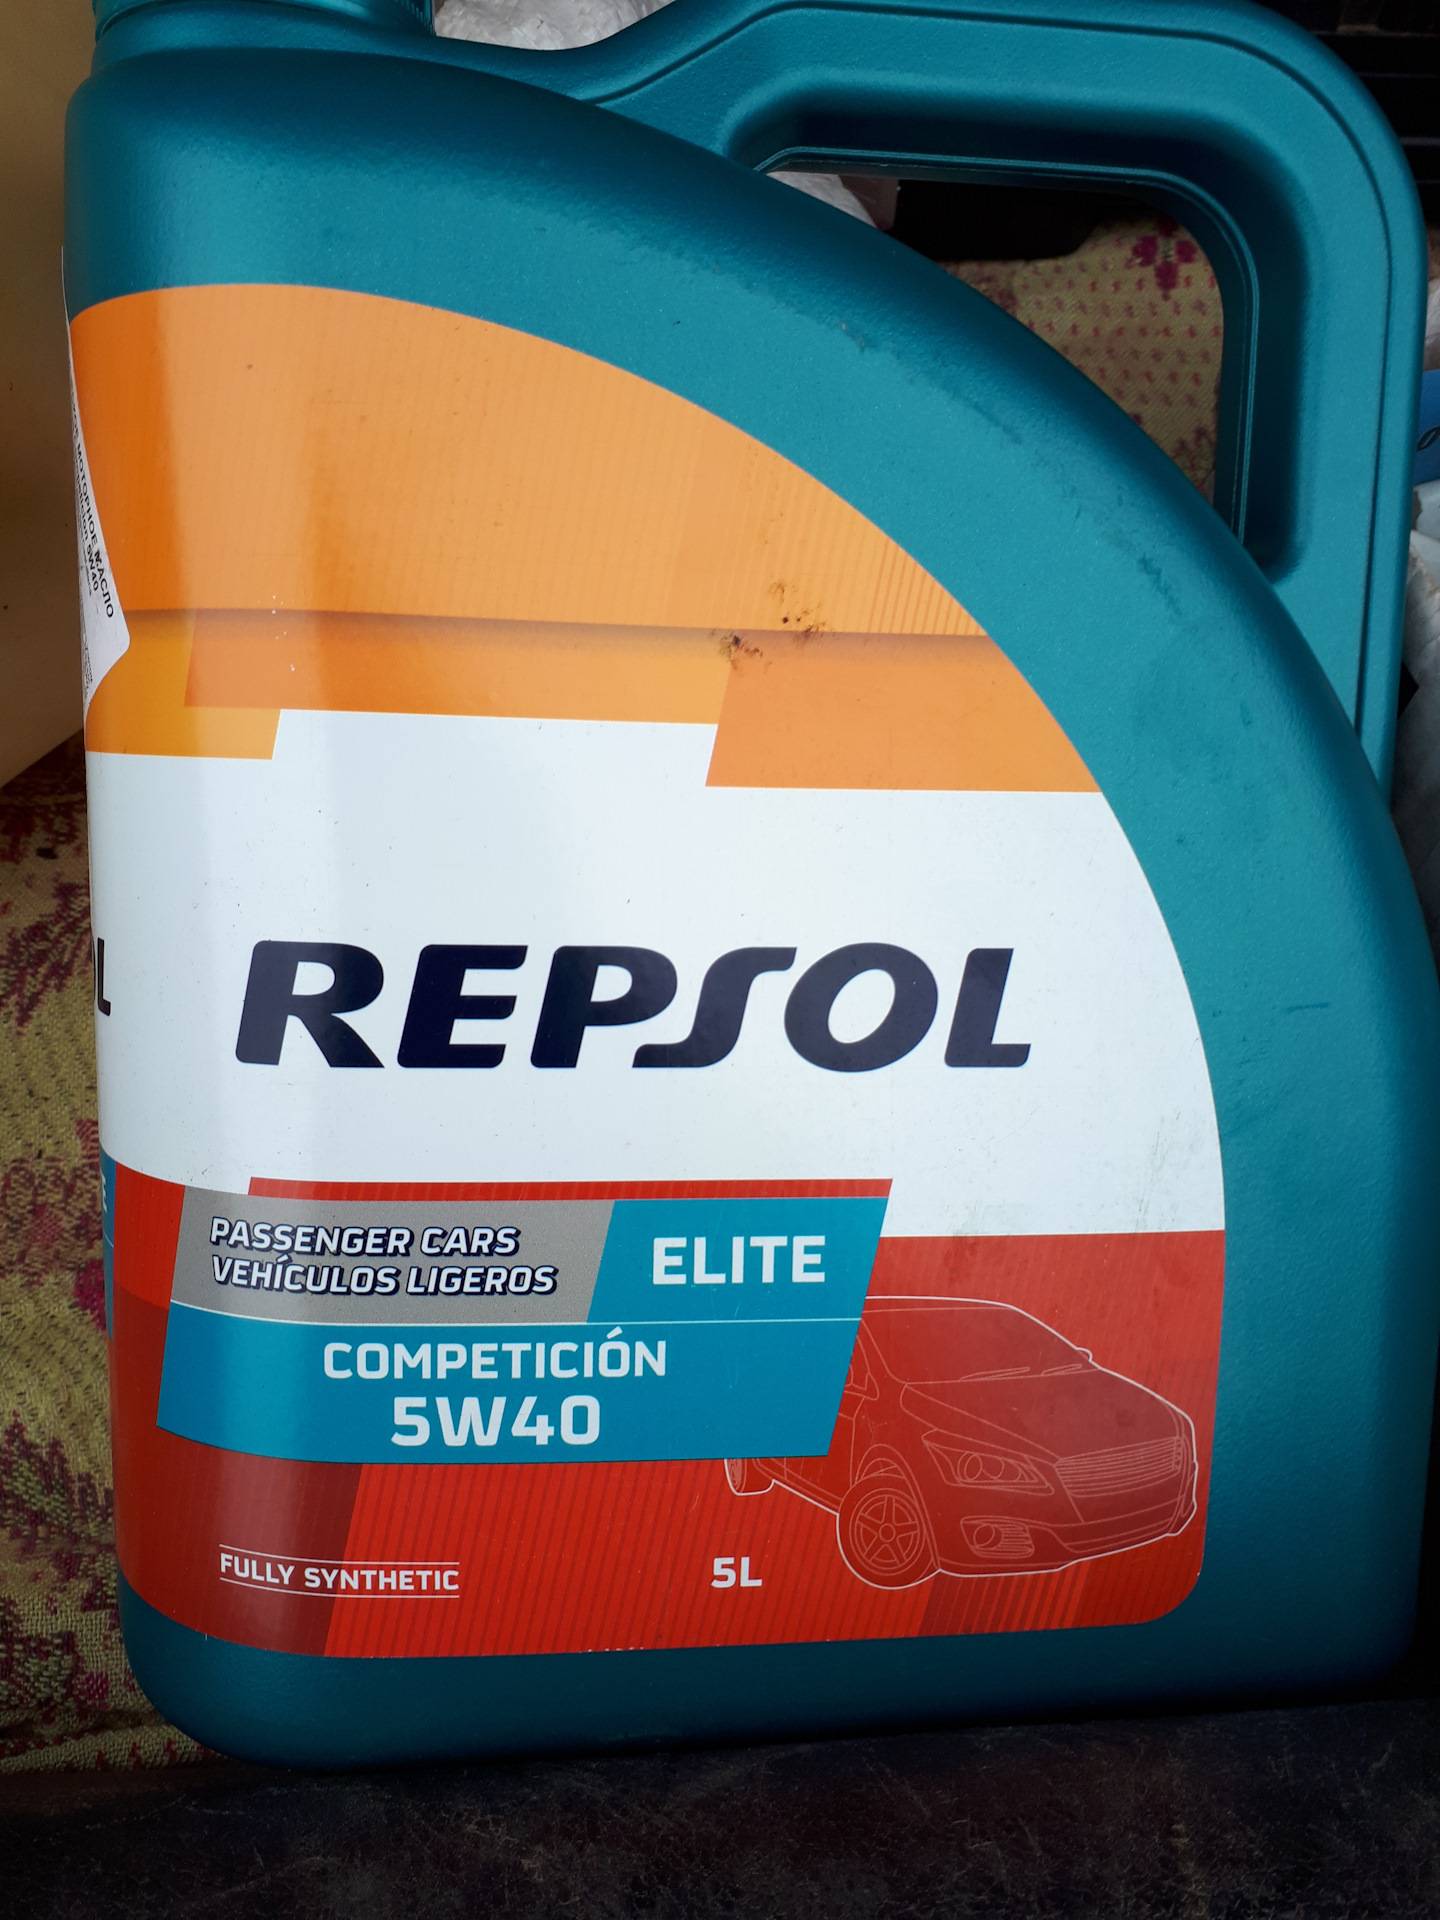 Масло lavr 10w 40. Repsol Elite competicion 5w-40 драйв 2. Репсол 5w40. Репсол 5w40 fully Synthetic. Repsol Elite competicion 5w-40 в Рено.